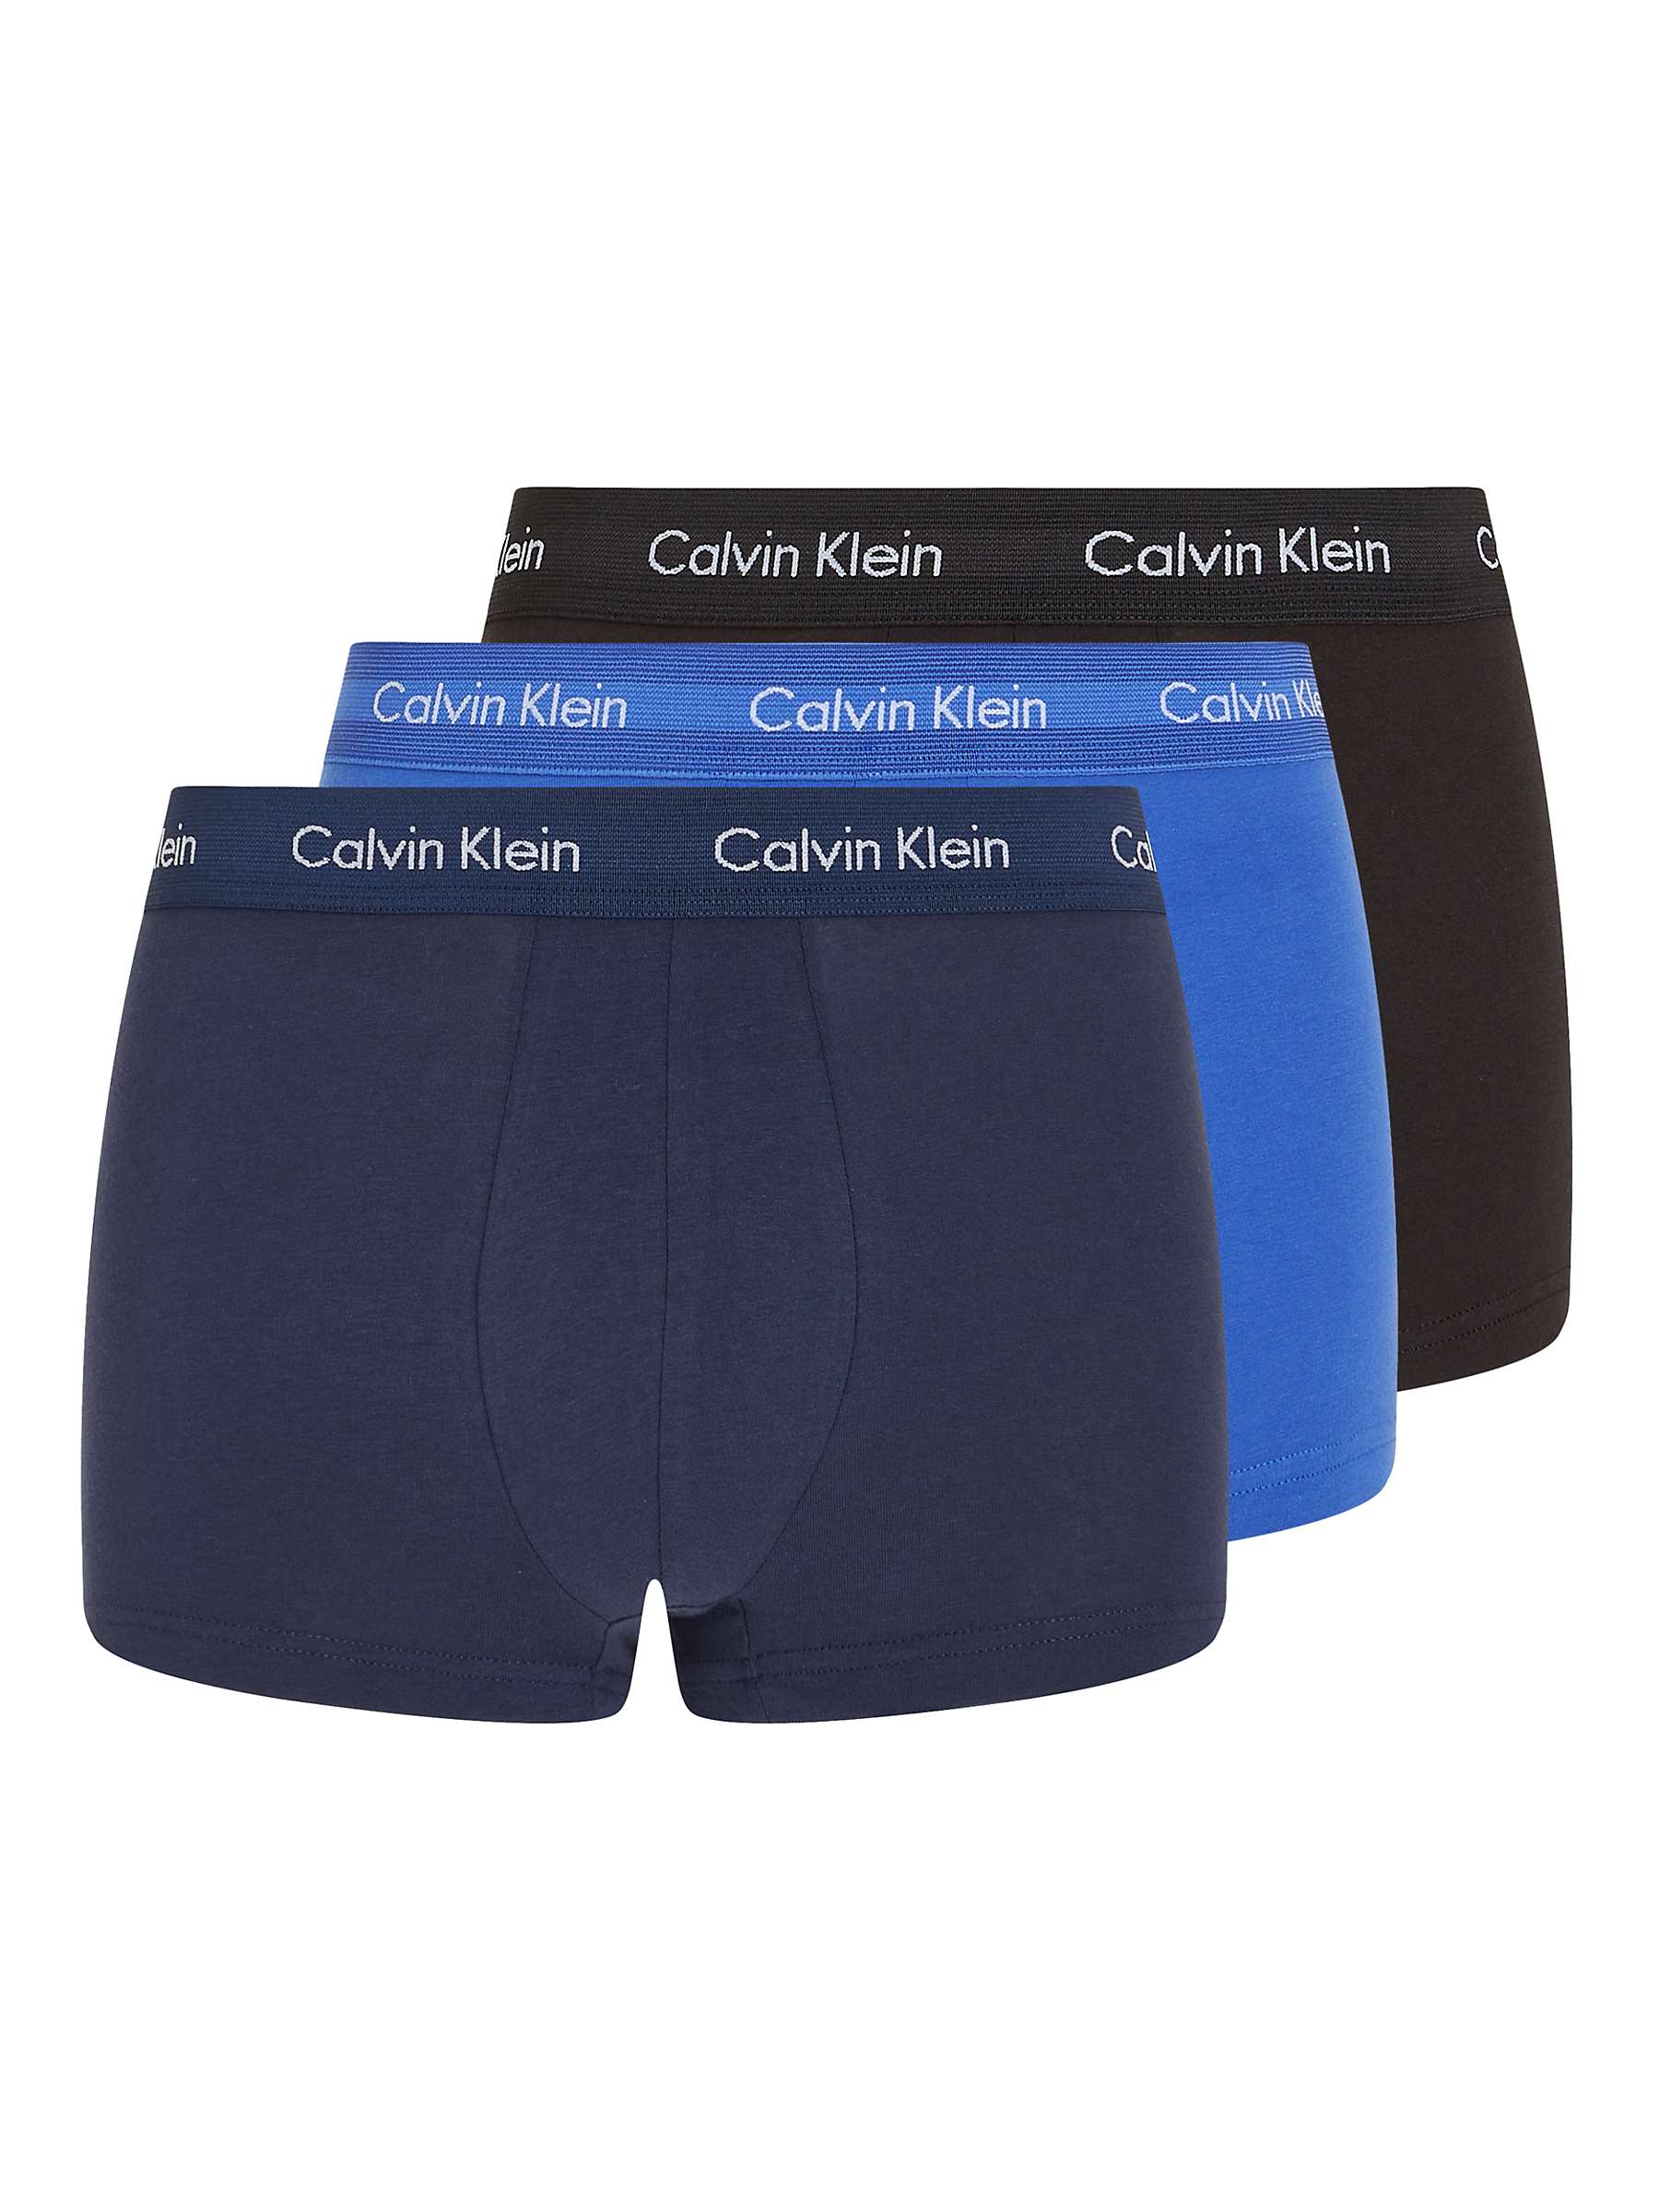 Calvin Klein 3 Pack Cotton Stretch Boxer Briefs - Black/Blue Shadow/Cobalt  Water